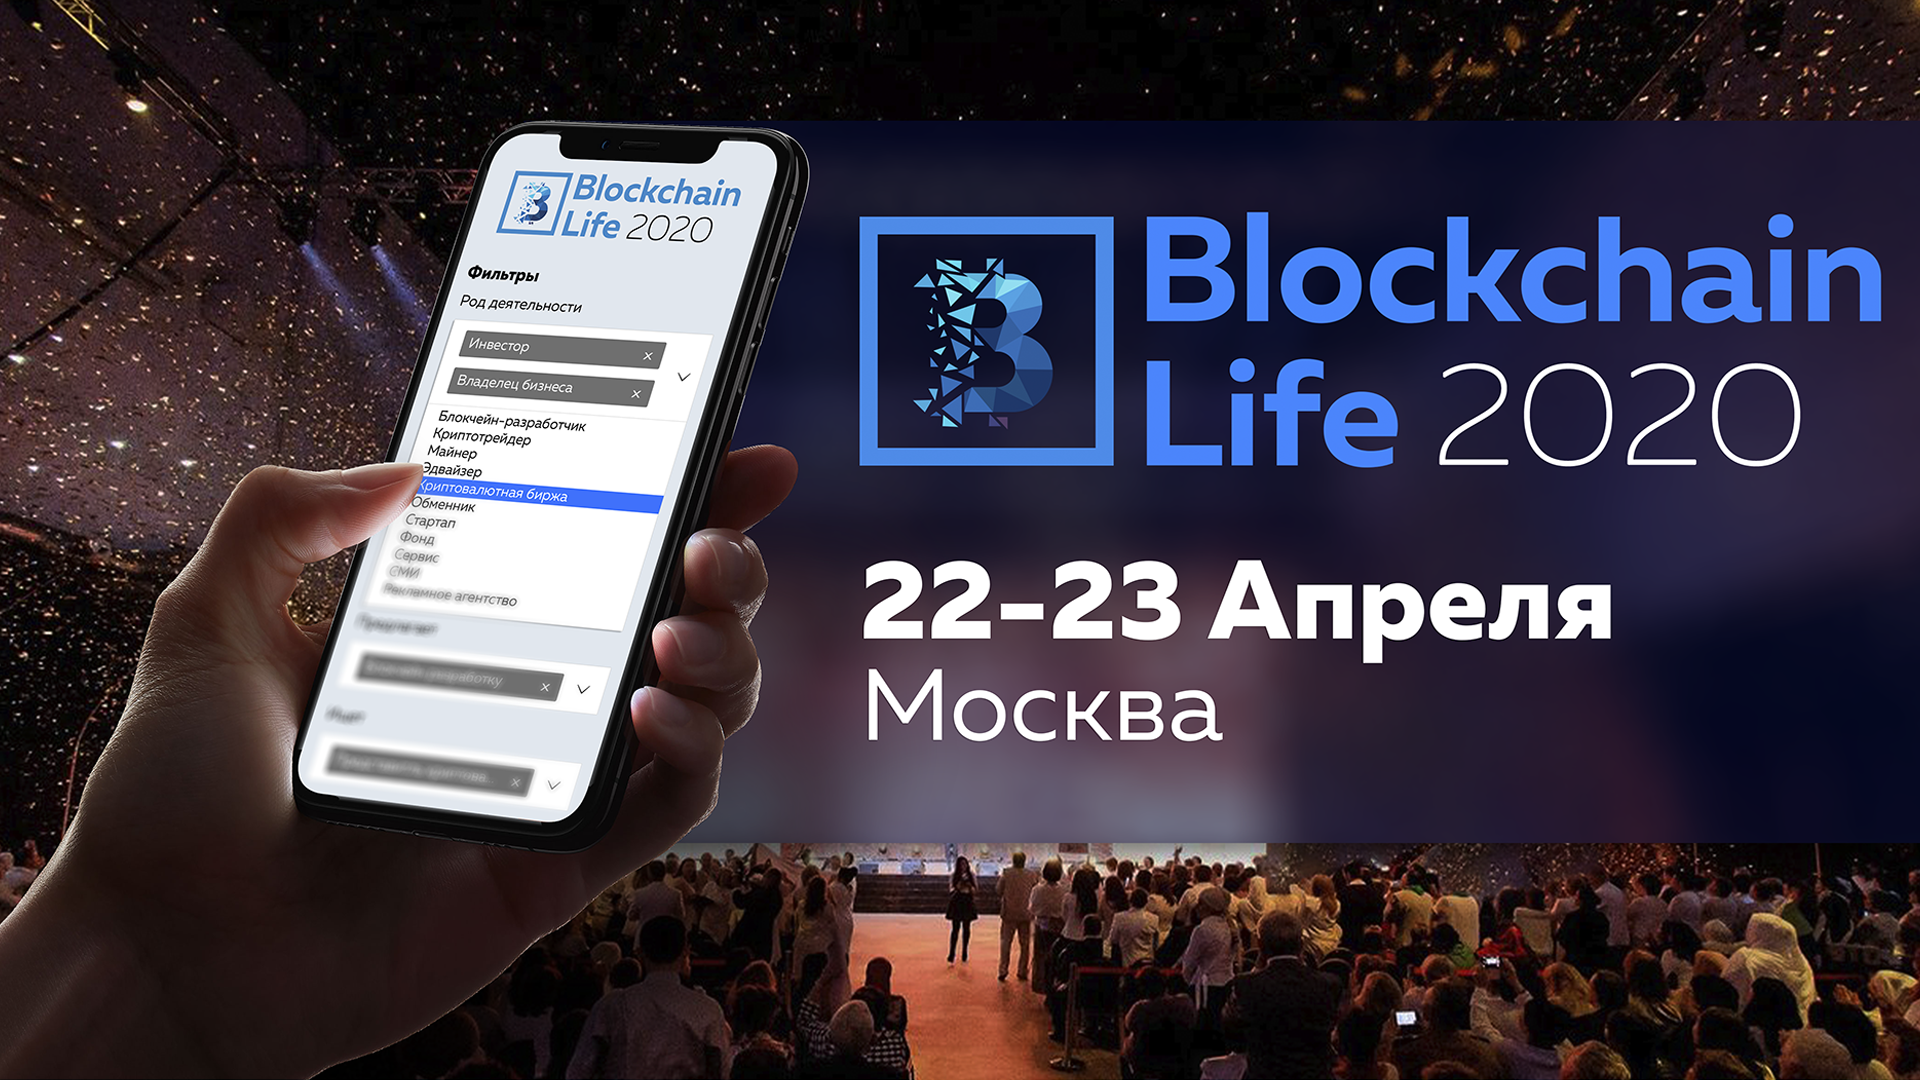 Как завести сотни знакомств на форуме Blockchain Life 2020?